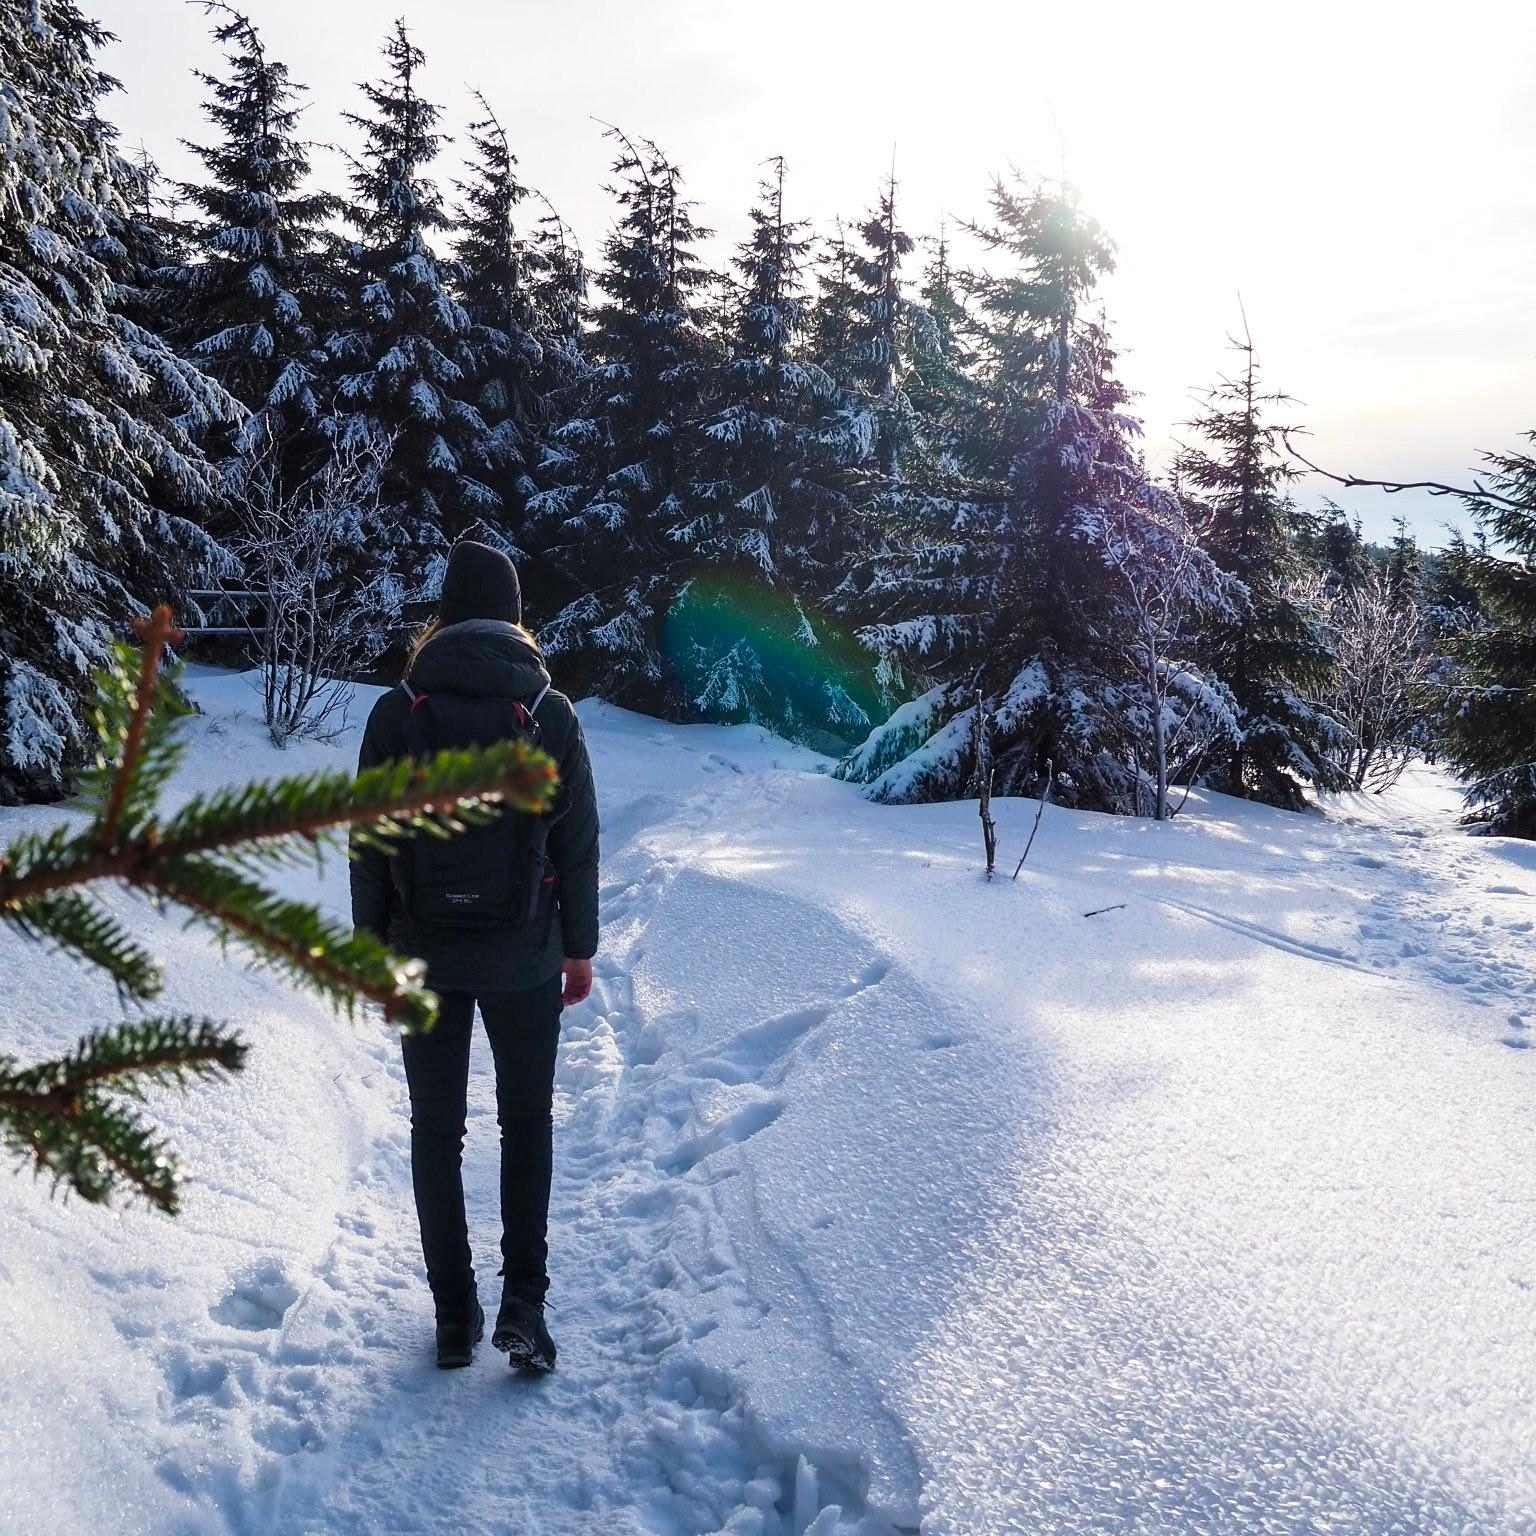 Winterwanderung durch den Harz ❄️🌲 #schnee #winter #kurzurlaub #travel #winteroutfit #winterwonderland